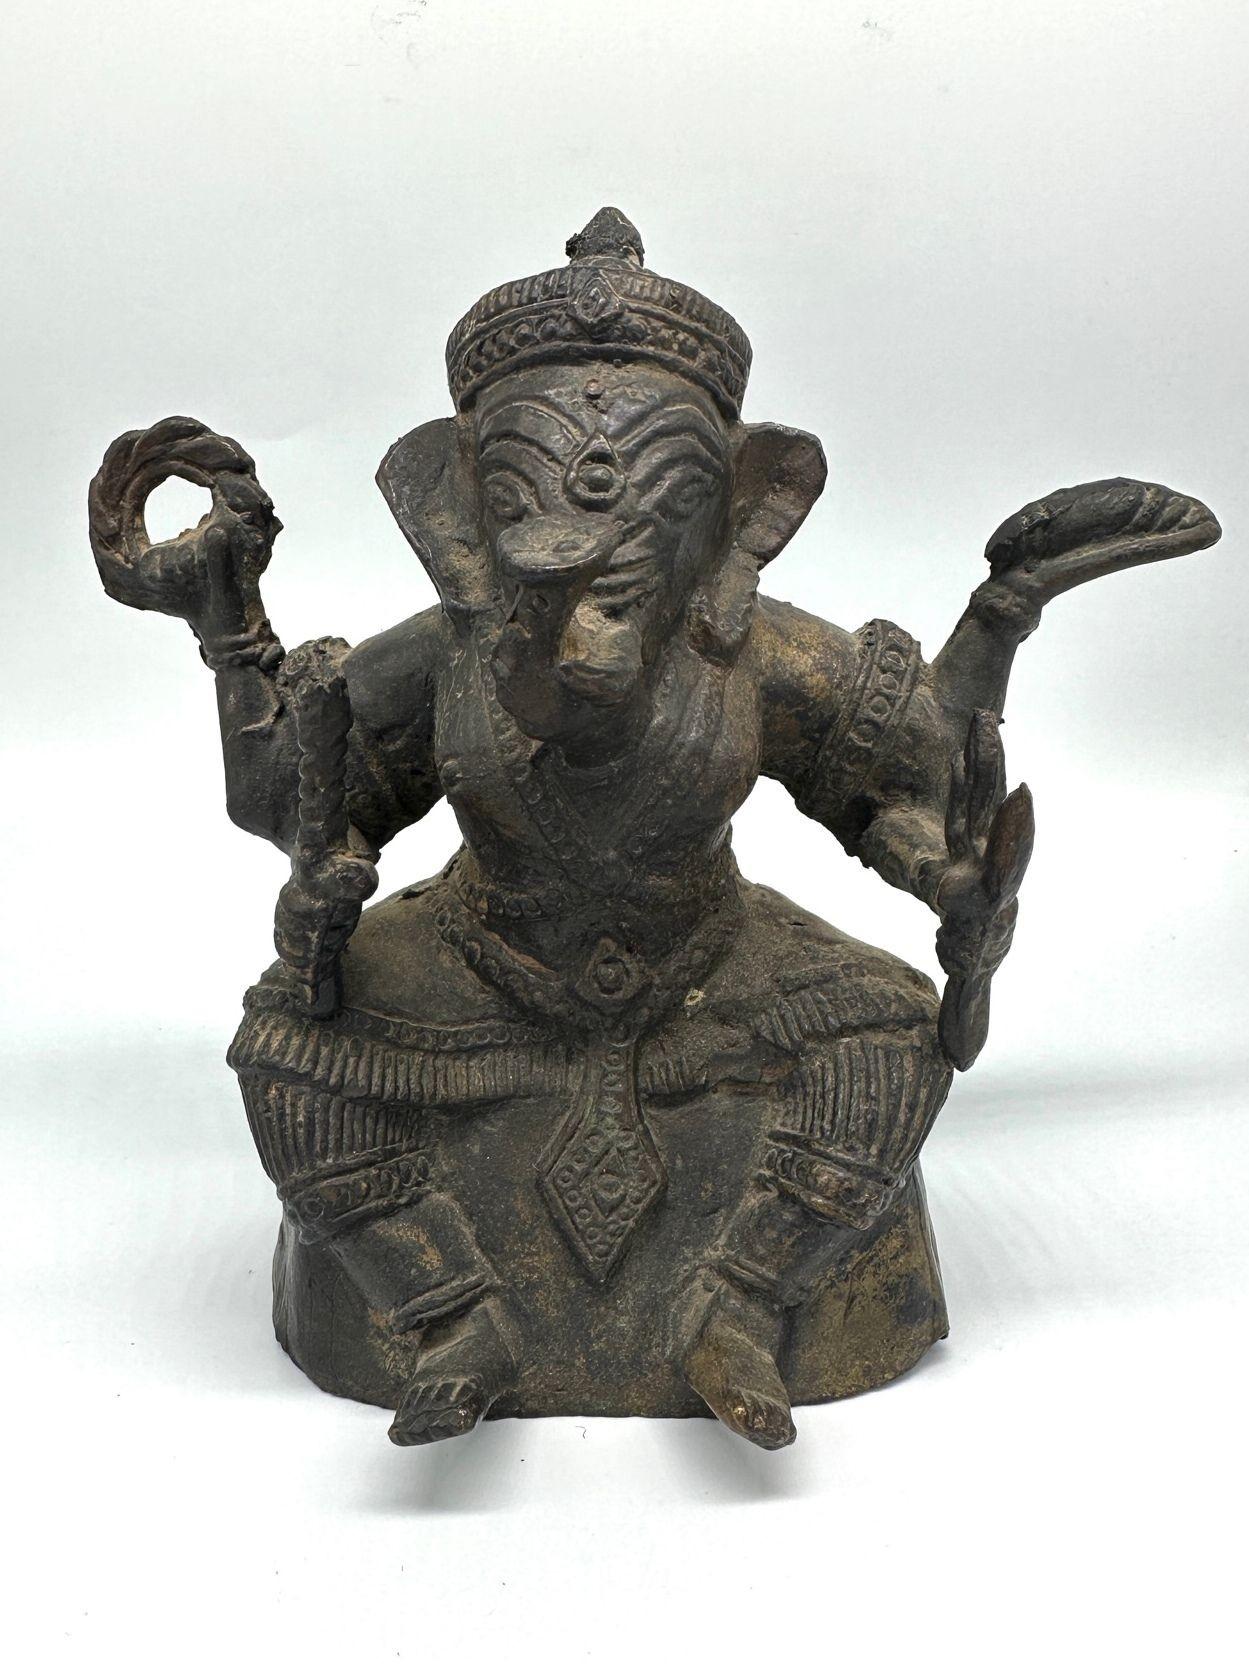 Antike Bronze Ganesha Sitzende Meditation 4 Hände Hindu Ganapati Skulptur von Ganesha, auch bekannt als Ganapati, ist eine verehrte Hindu-Gottheit weithin als der Entferner von Hindernissen und der Gott der Weisheit verehrt.
Ganesha wird mit einem